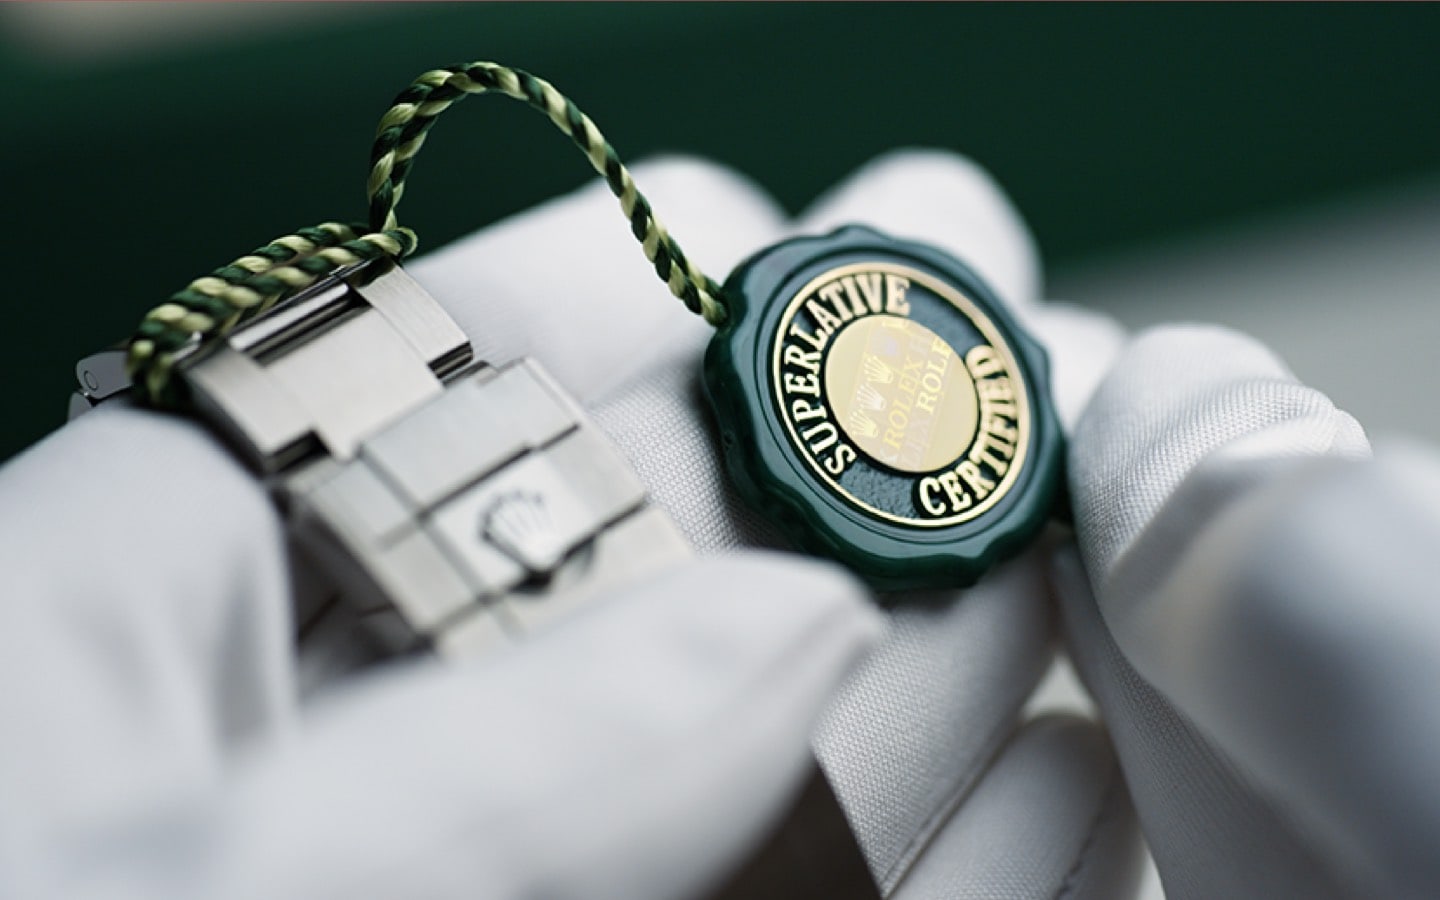 Pembuatan jam tangan rolex - lebih dari sekadar sertifikasi, suatu keadaan pikiran